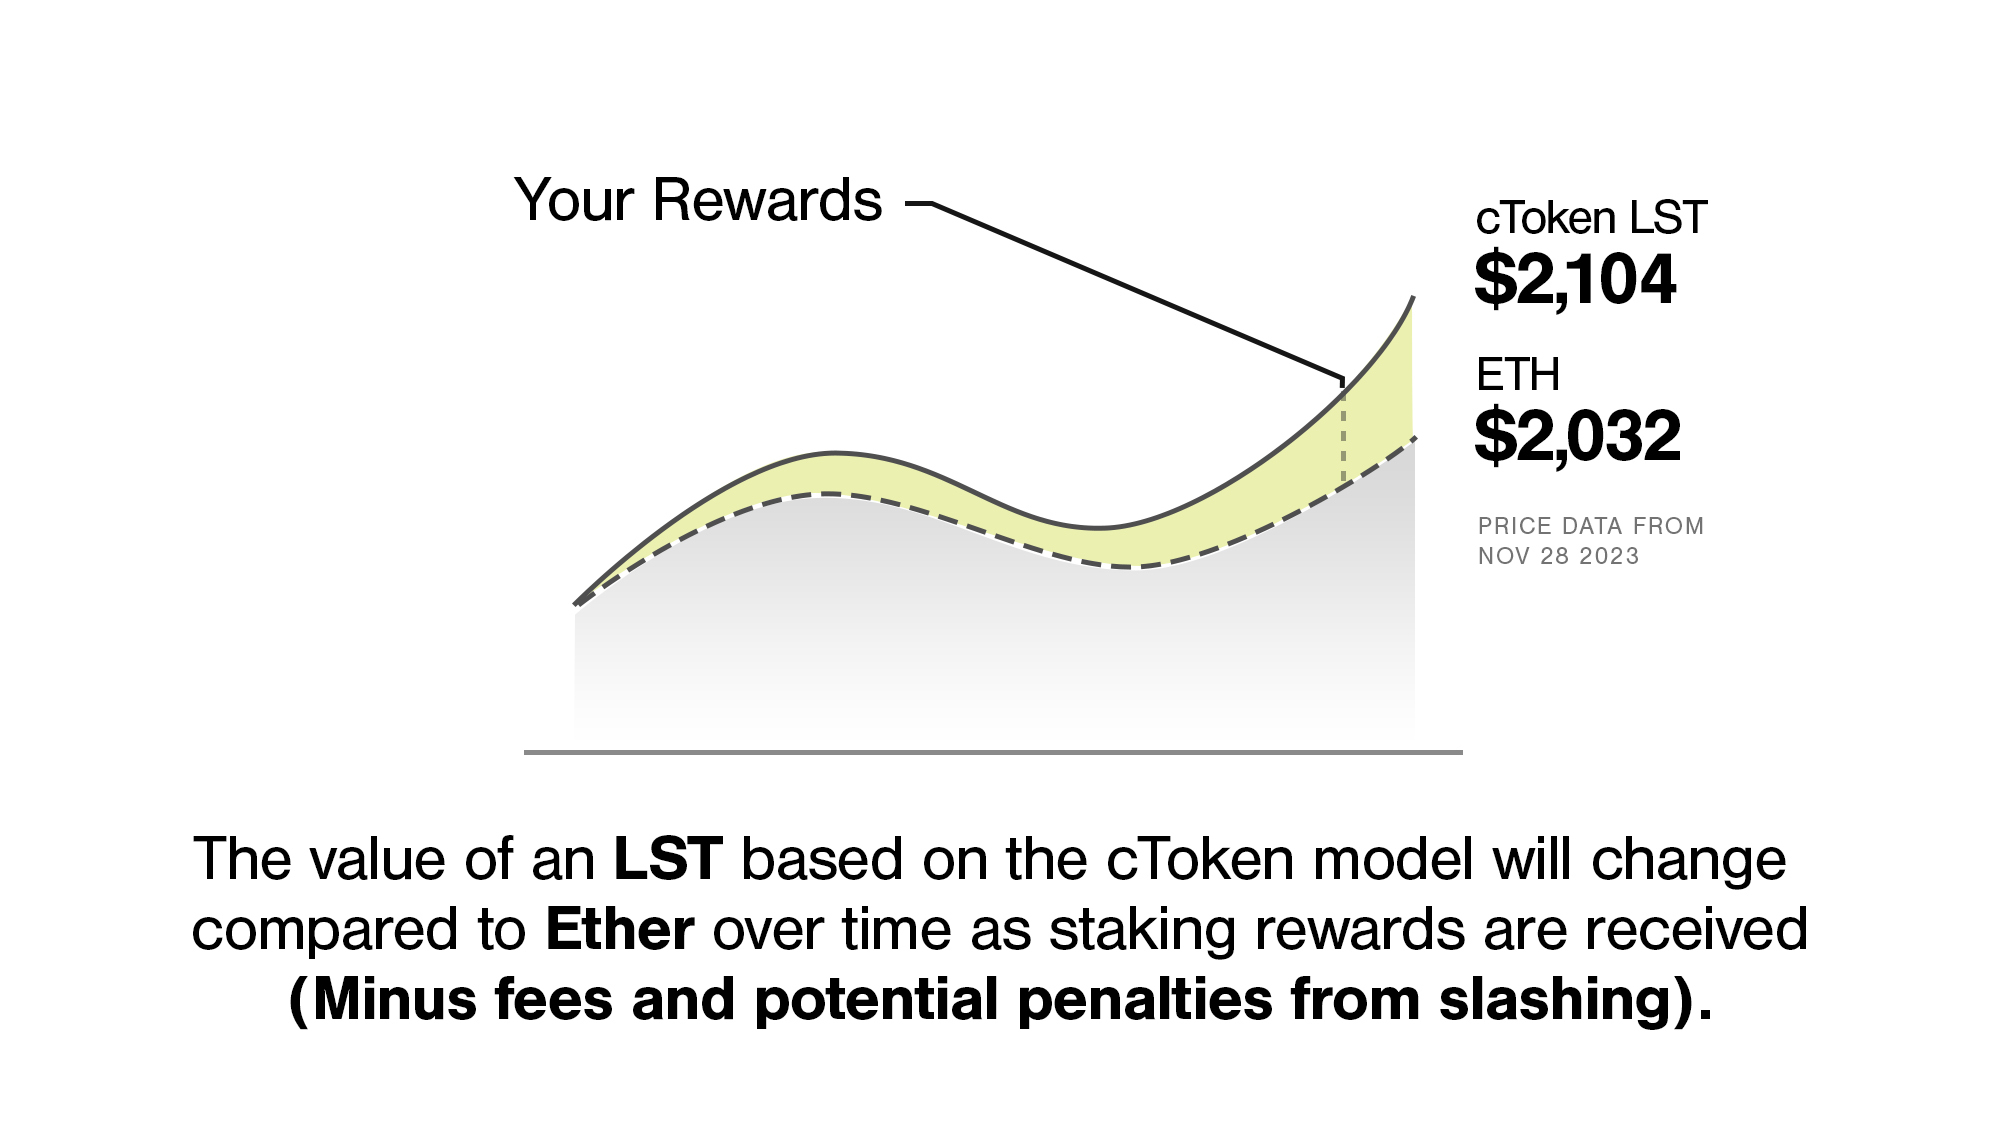 Liquid Collective’s LsETH token follows the cToken standard